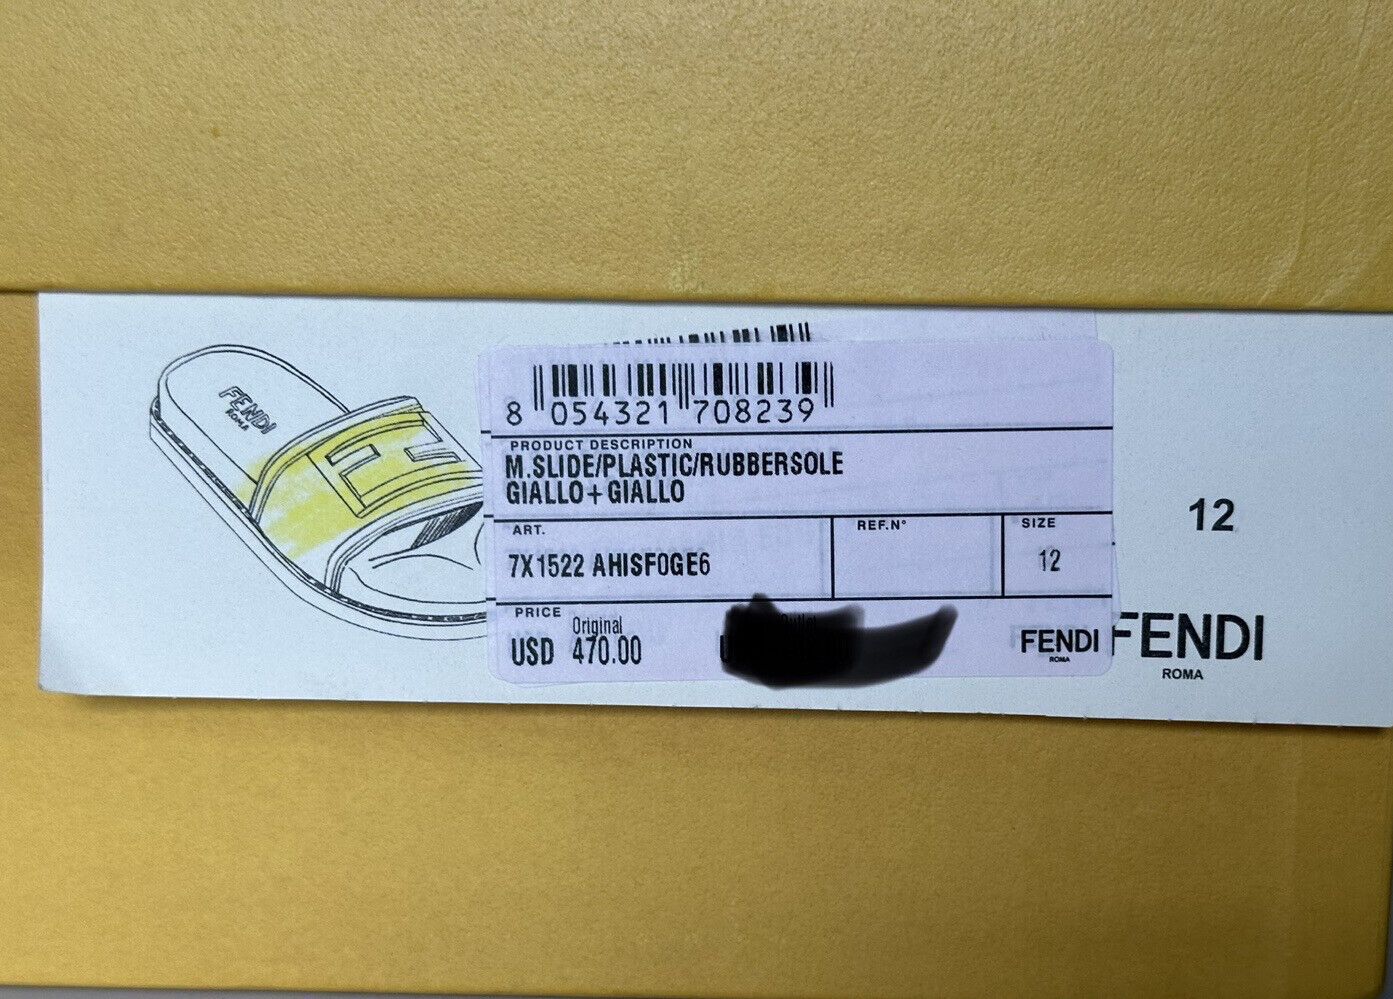 NIB 470 долларов США Мужские резиновые шлепанцы Fendi FF, желтые 13 США/12 Великобритания Италия 7X1522 